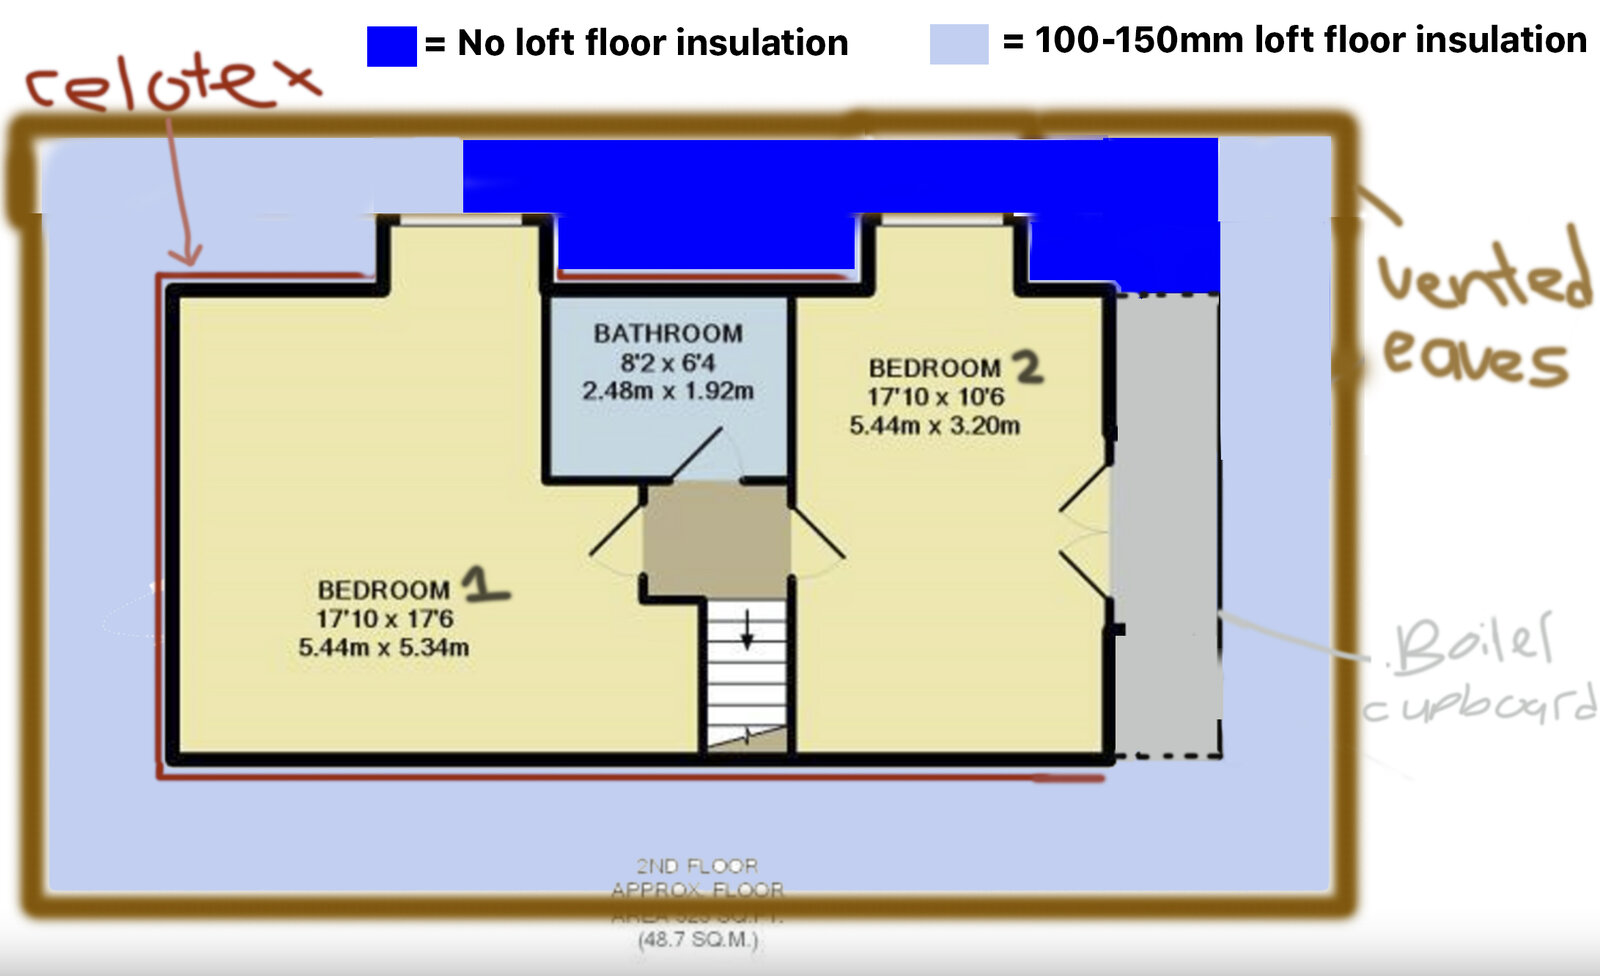 top_floor_insulation_layout.jpg